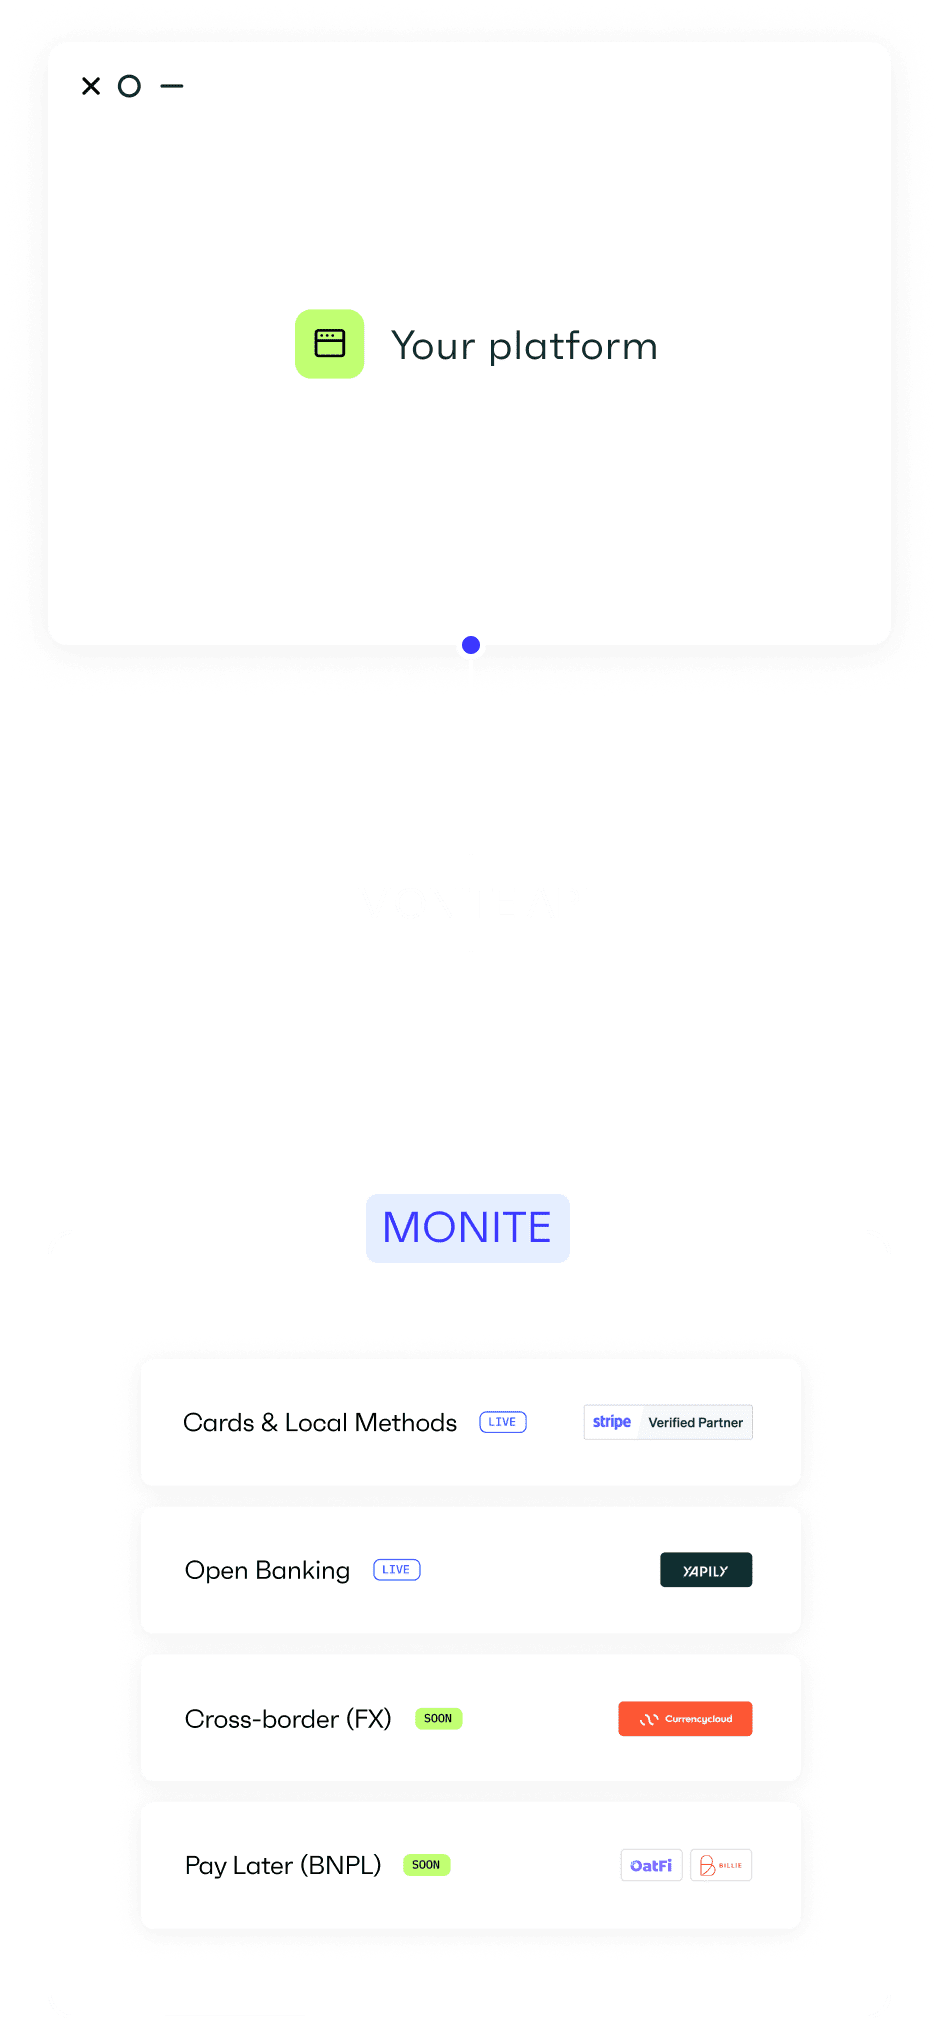 Monite API